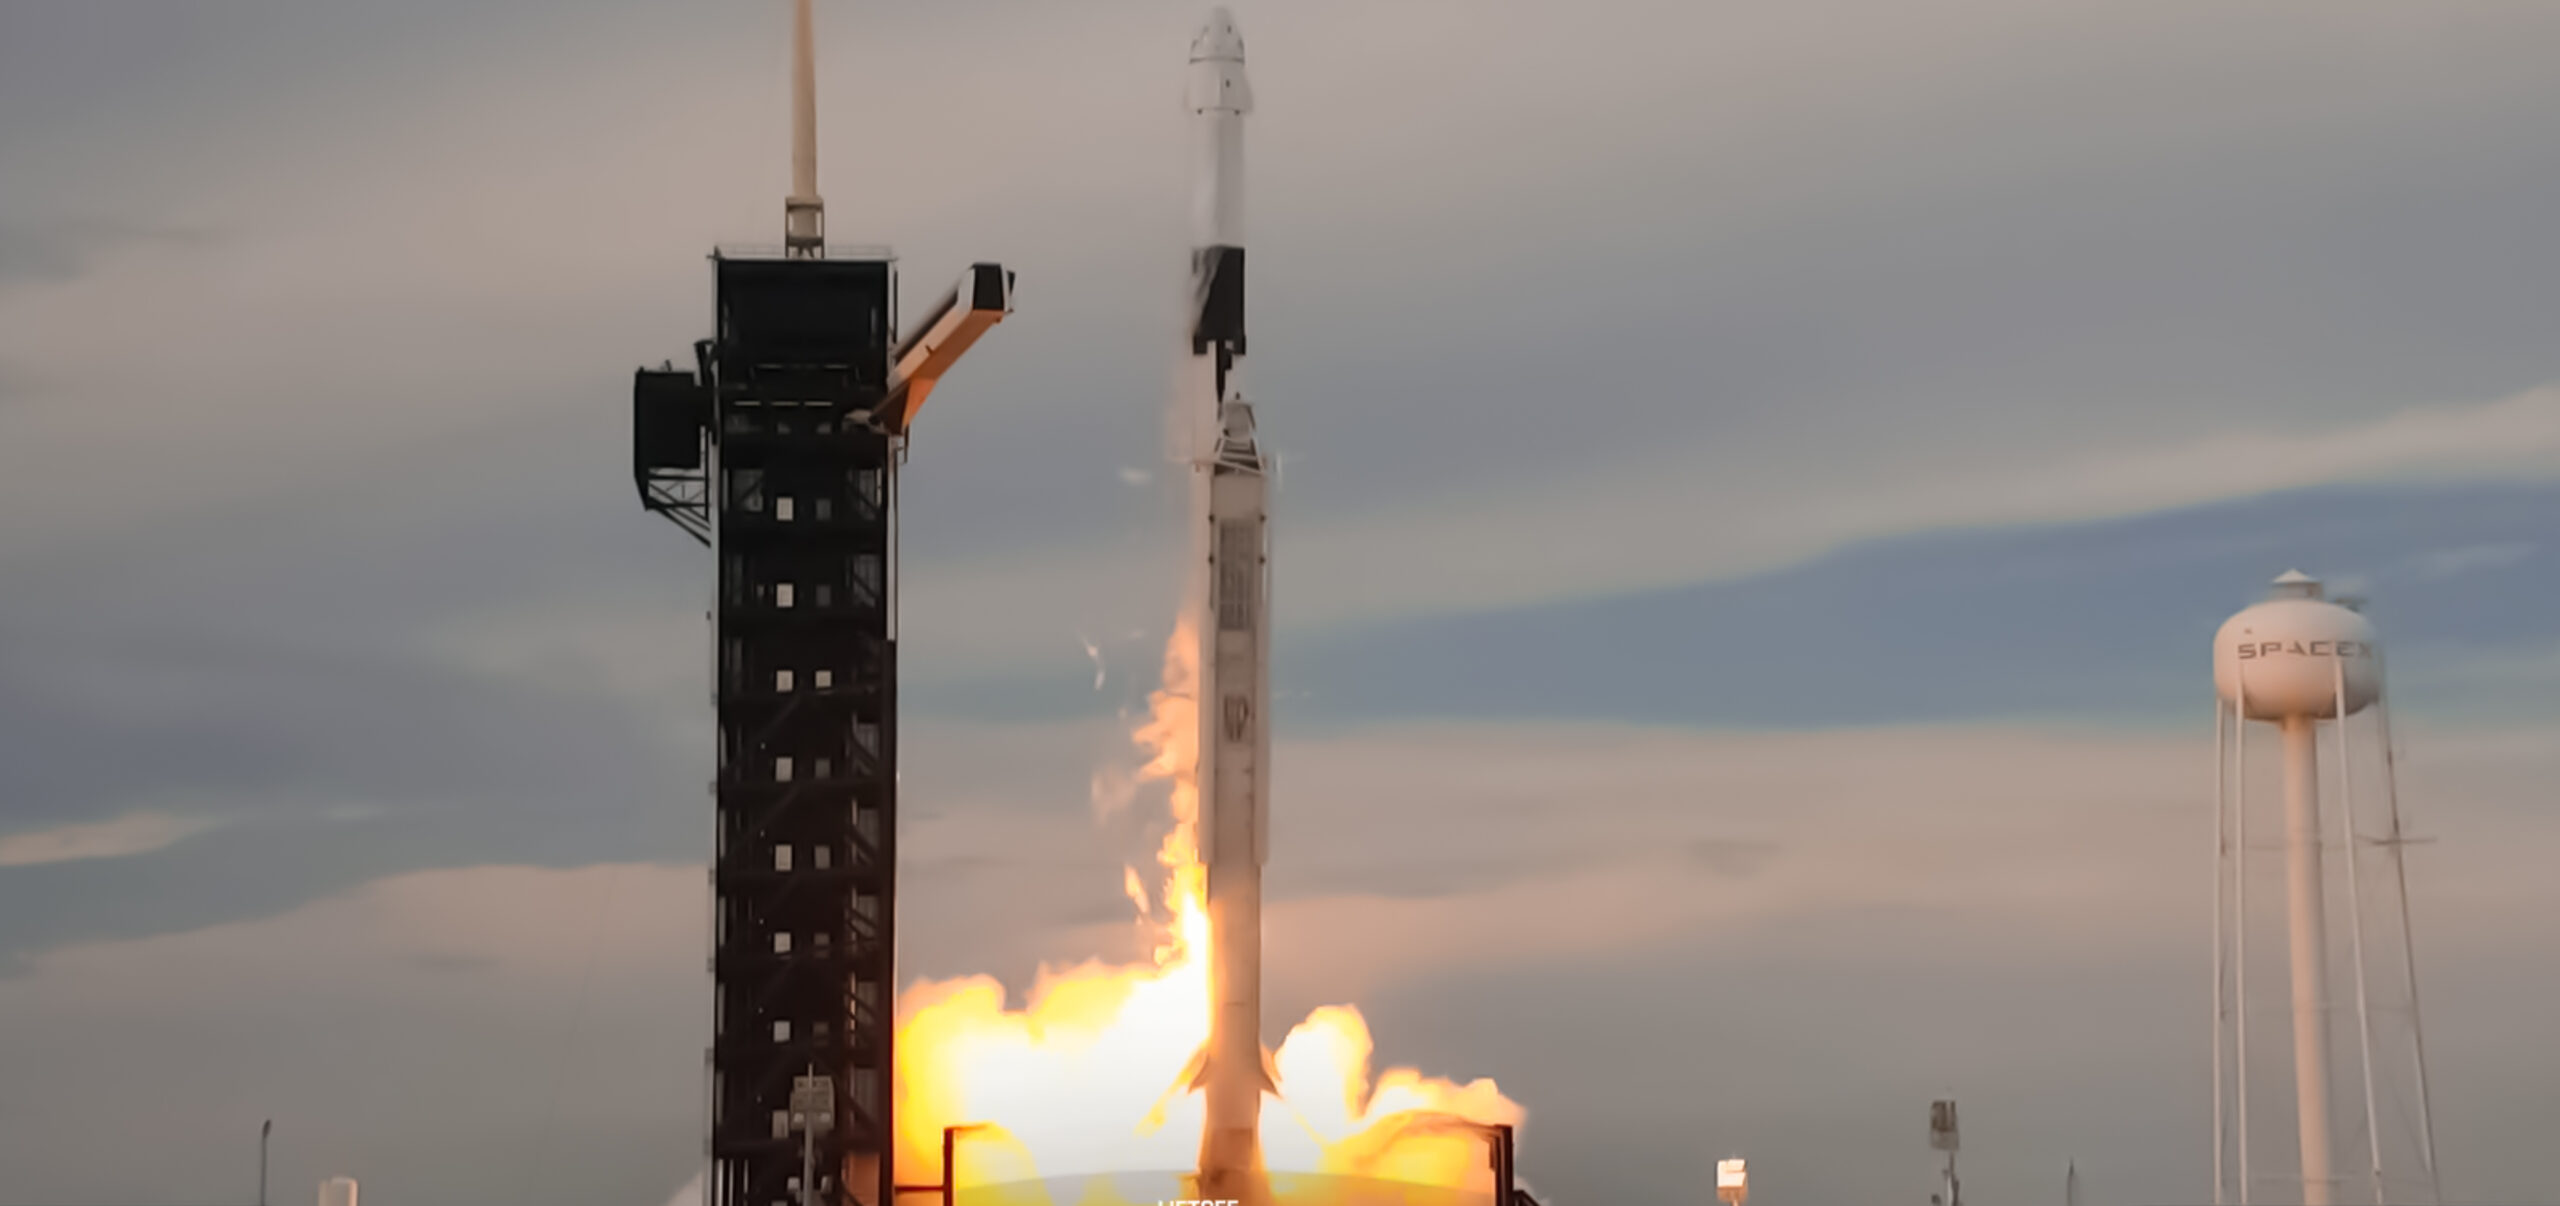 Despega Axiom 2: nueva misión privada a la Estación Espacial Internacional